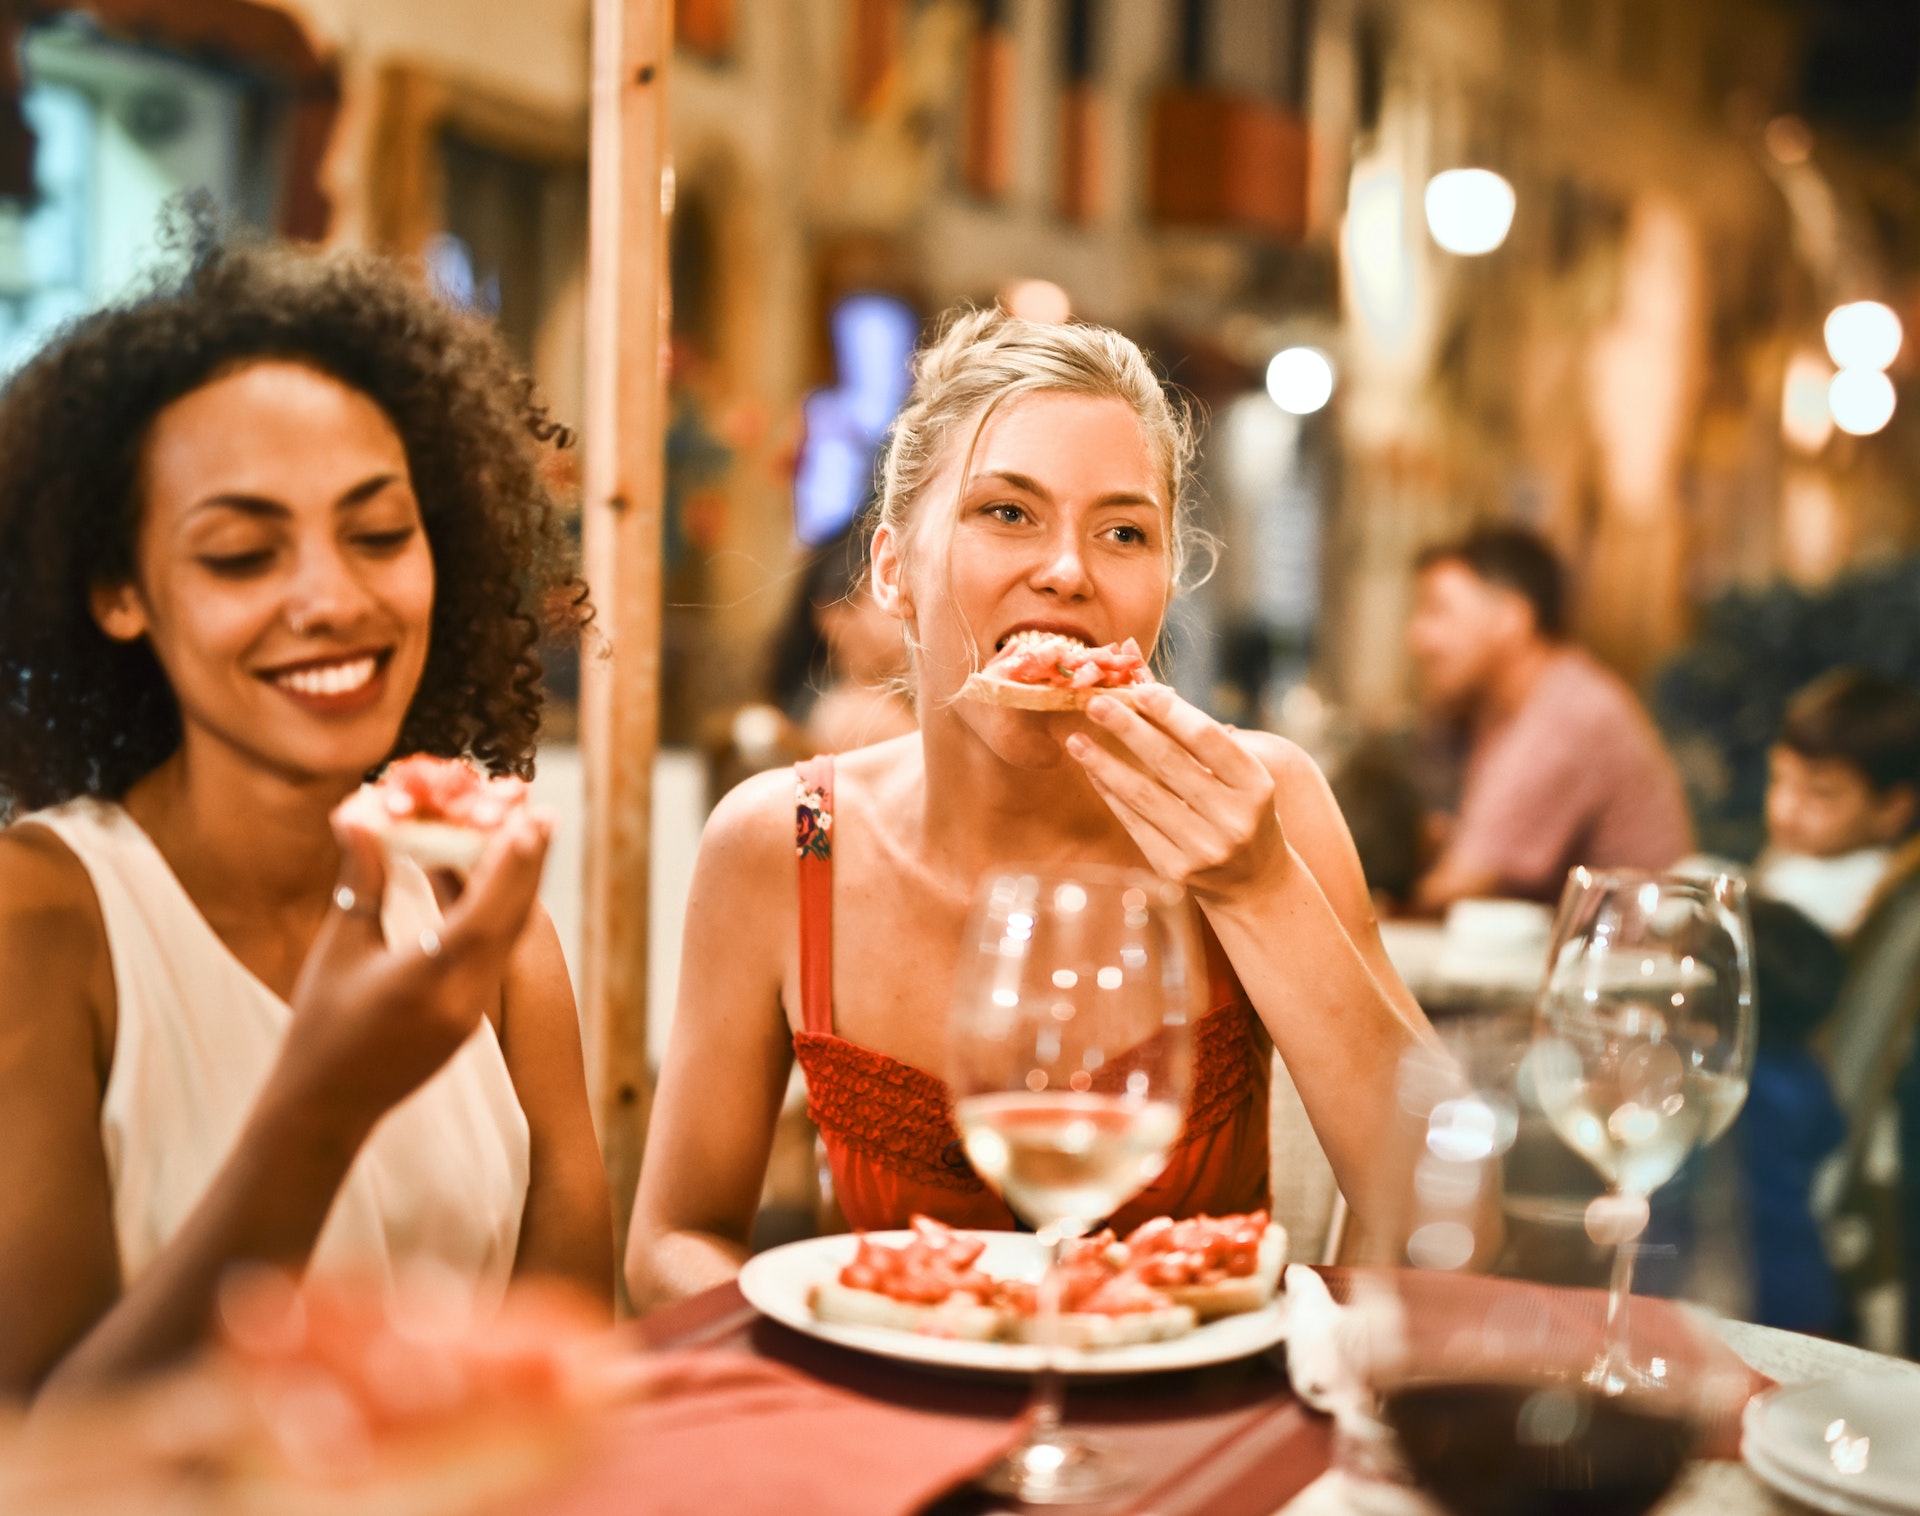 Des femmes mangeant et buvant des boissons dans un restaurant | Source : Pexels